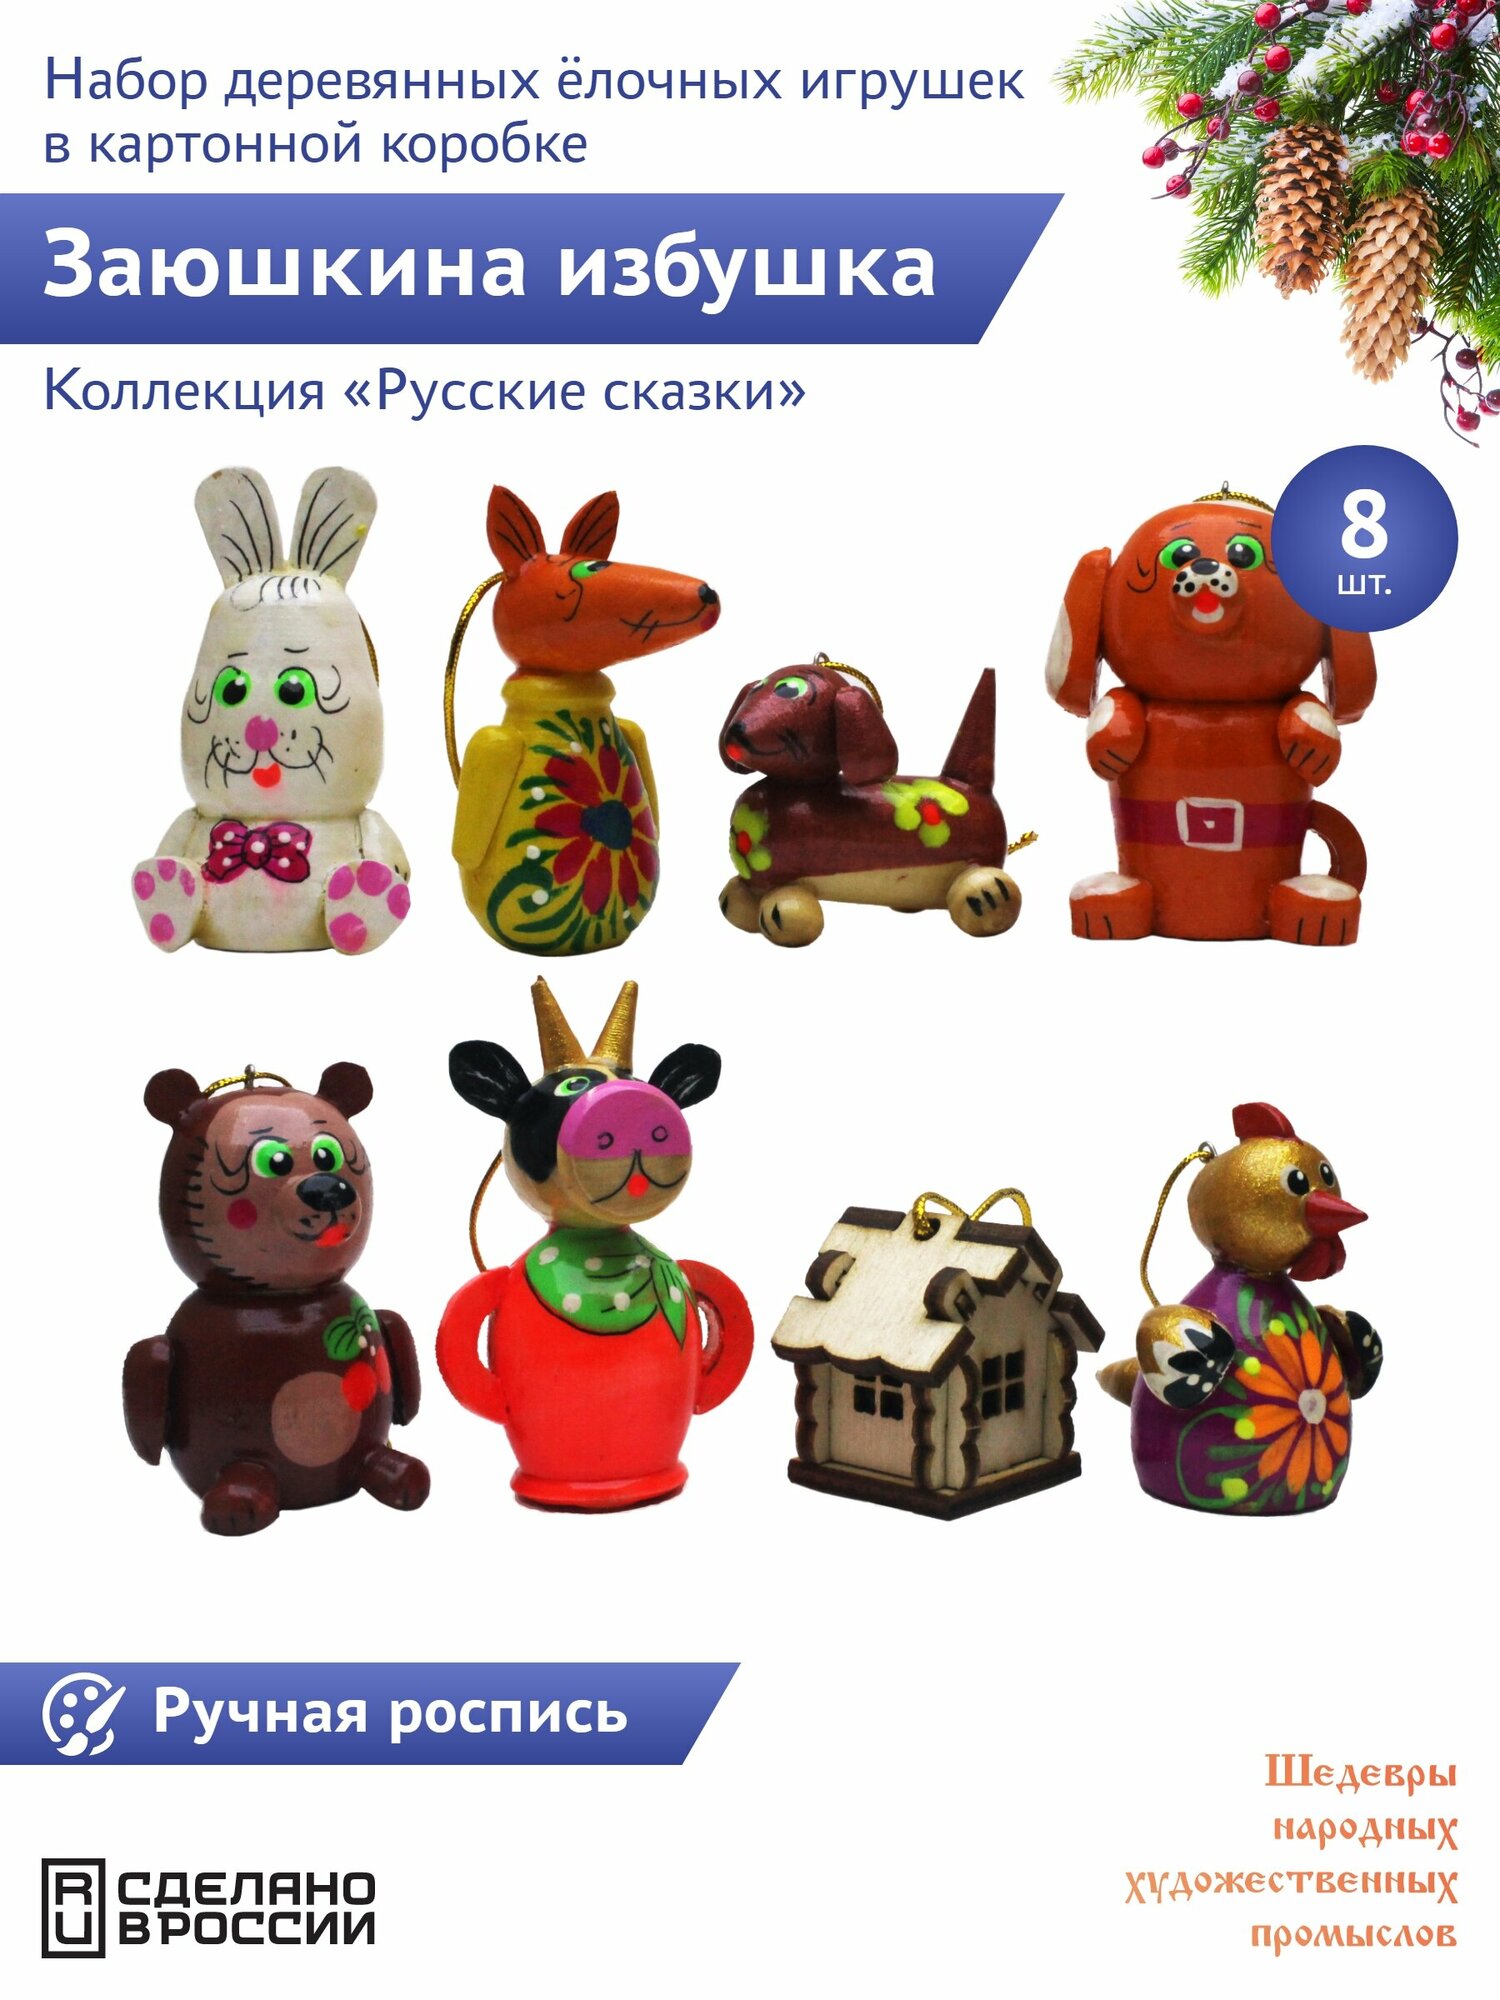 "Русские сказки: Заюшкина избушка" 8 штук Сказочный персонаж набор деревянных елочных игрушек в картонной коробке